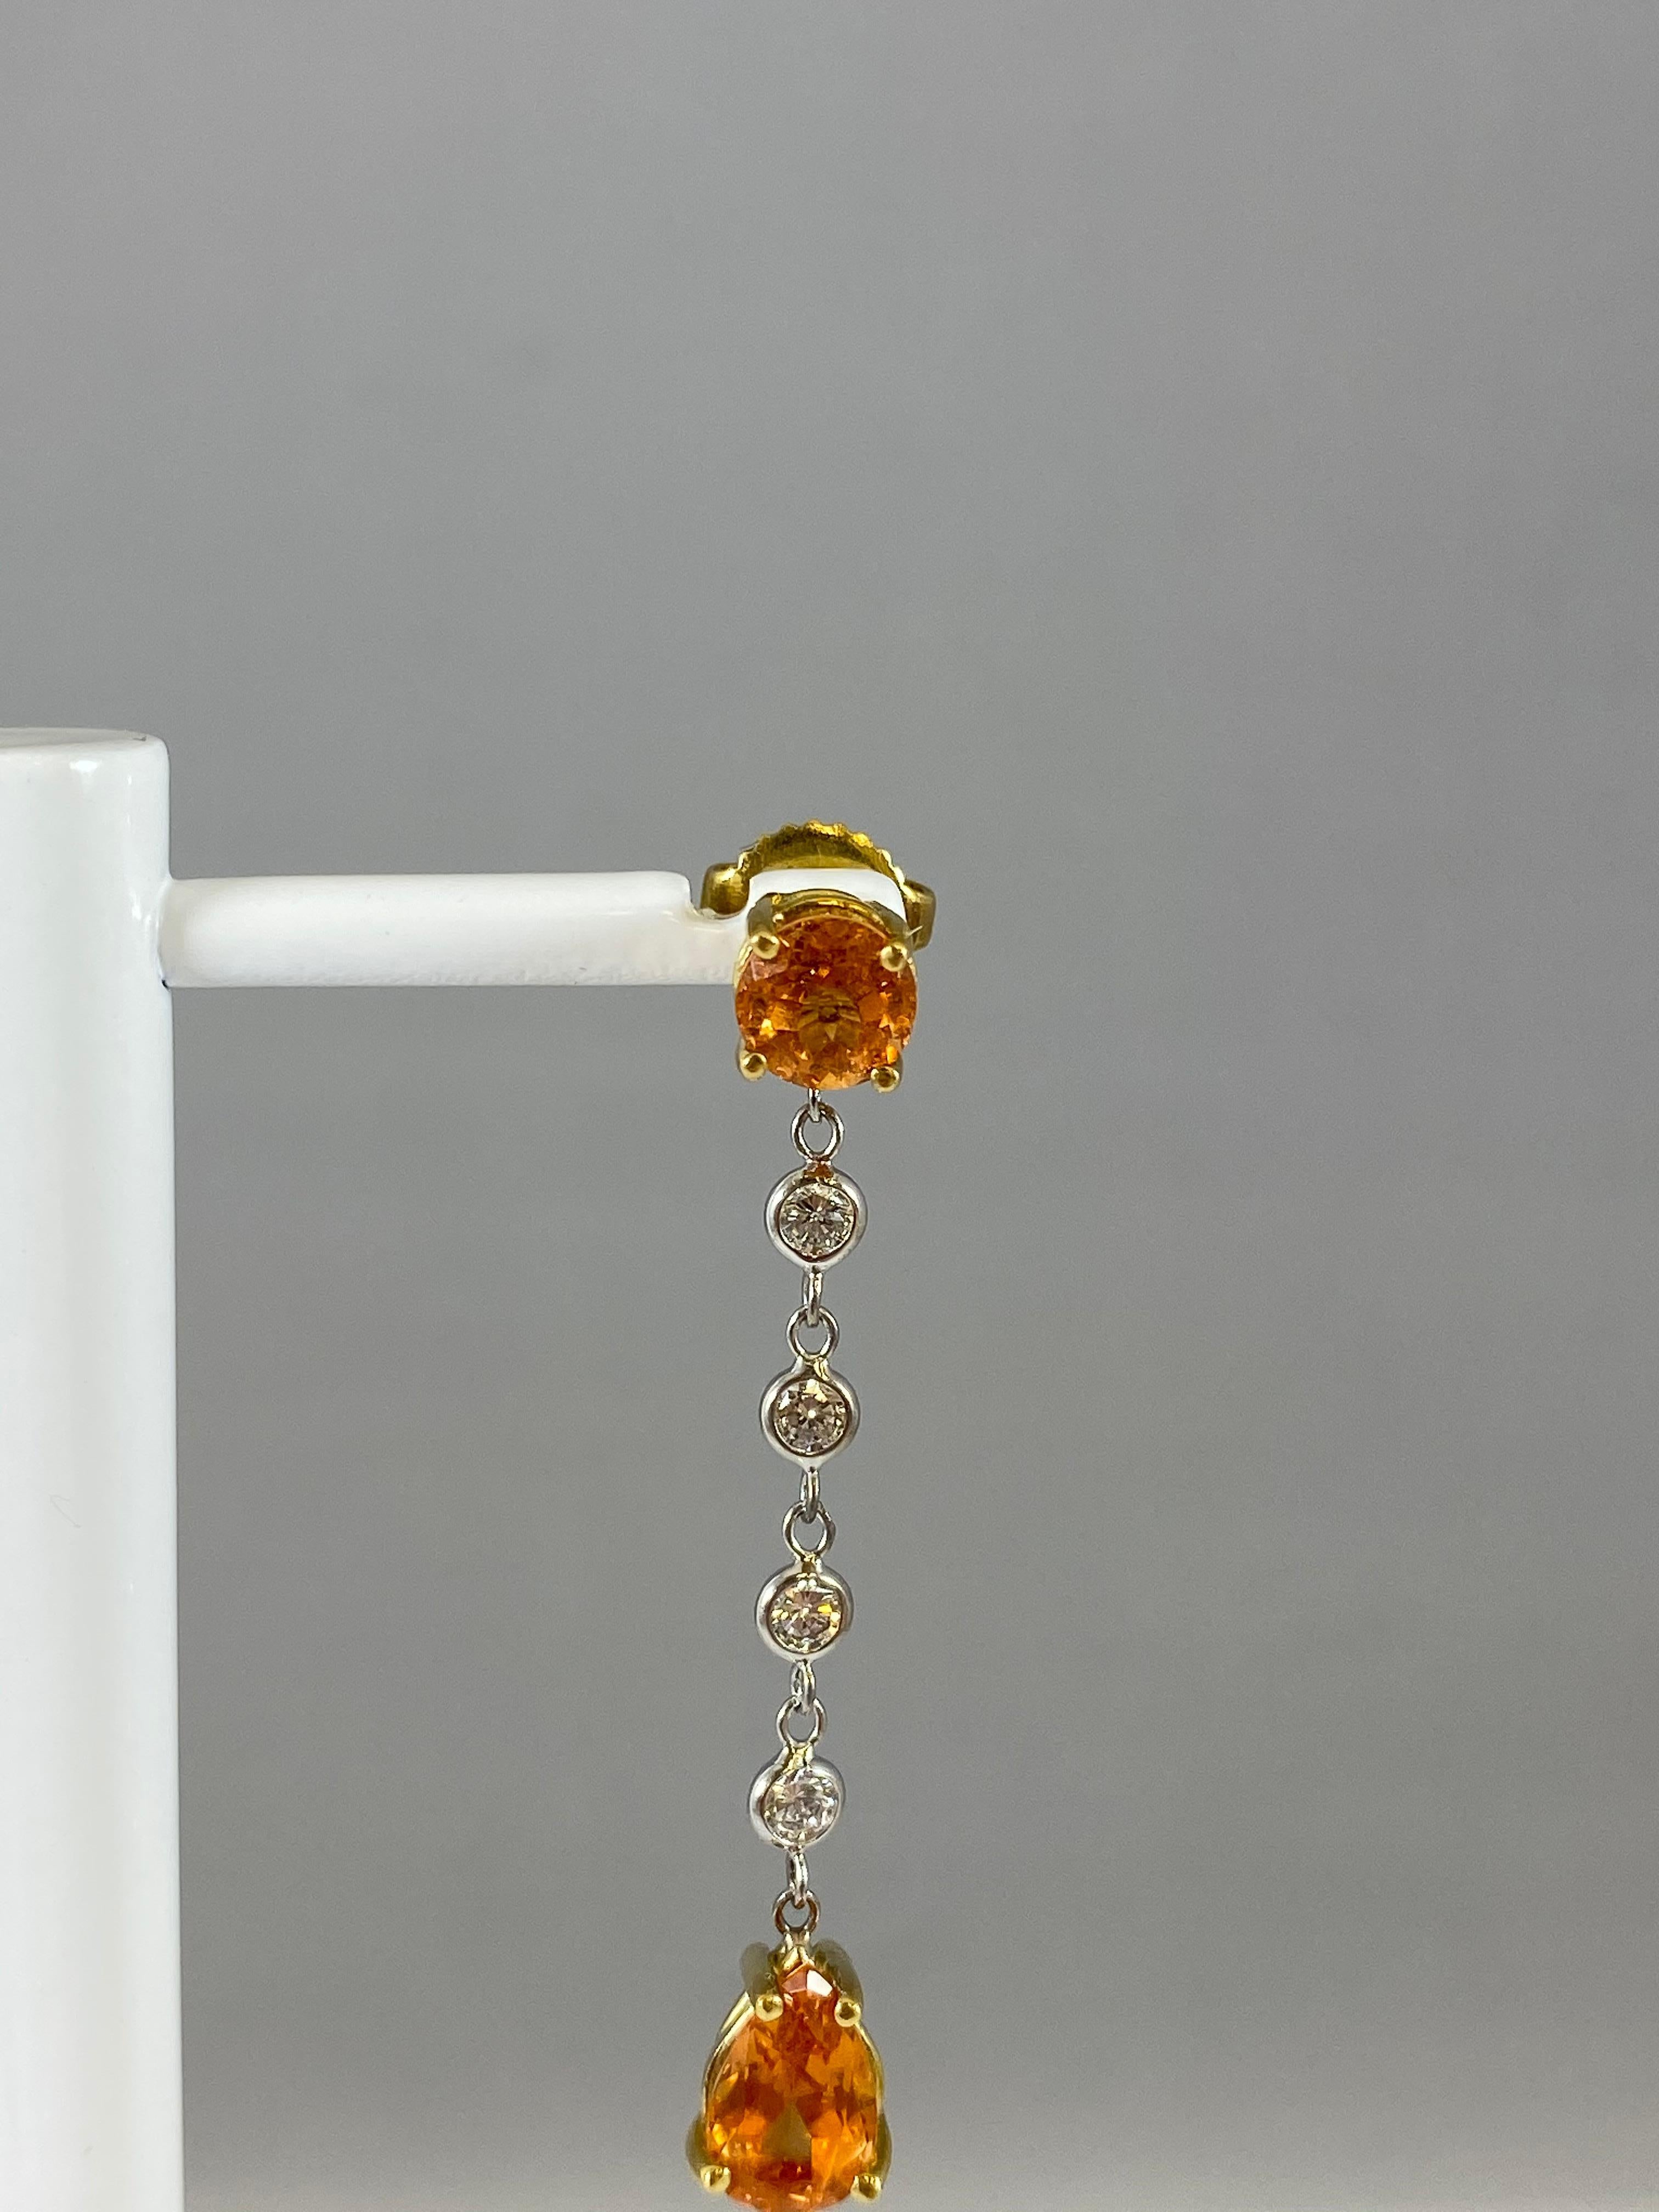 Hammerman Jewels 18 Karat Yellow Gold Mandarin Garnet and Diamond Dangle Earrings. 0.52 carats of diamonds, and 4.04 carats of mandarin garnet. 